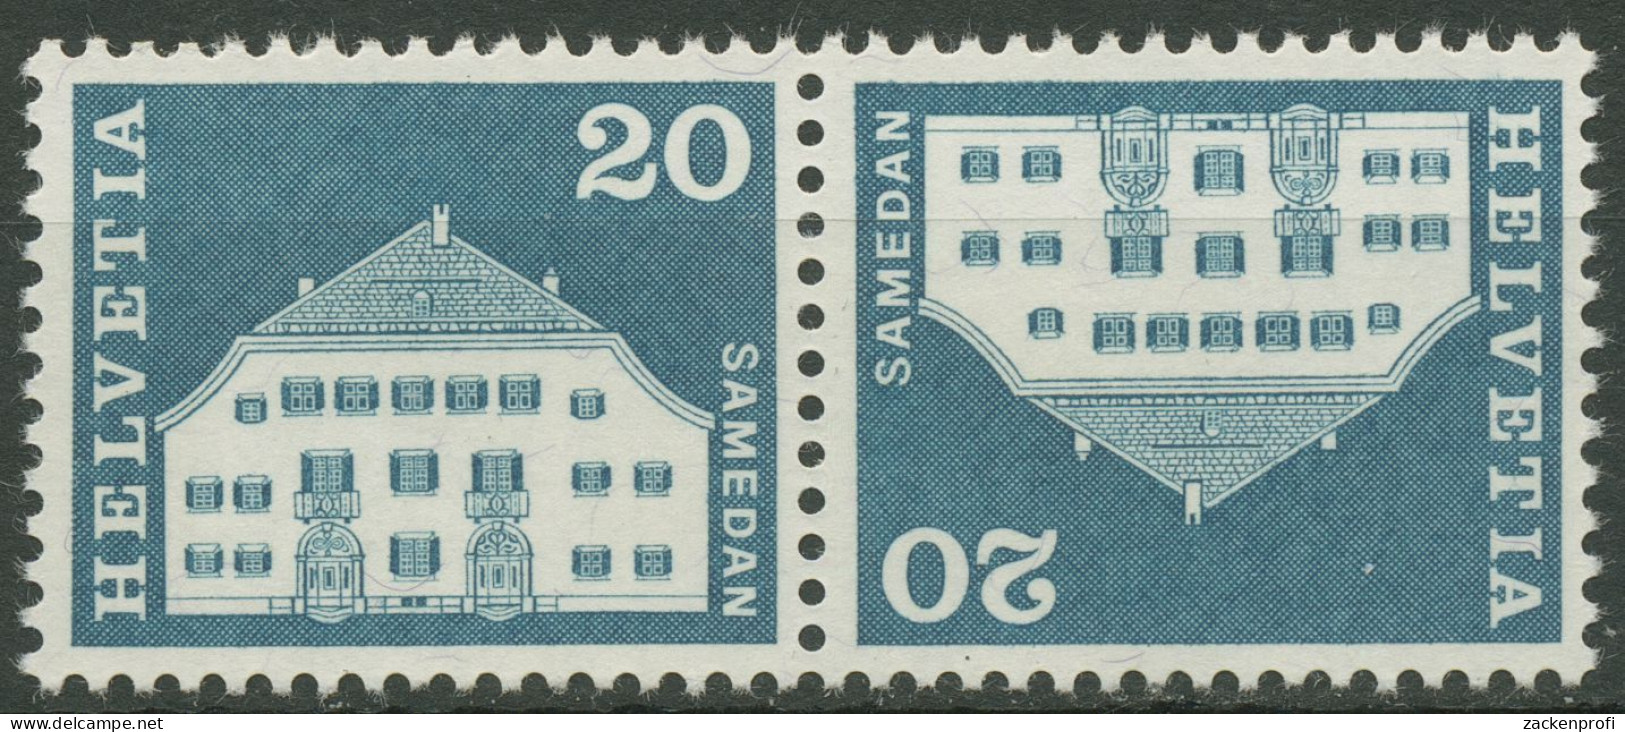 Schweiz 1968 Bauwerke Planta-Haus Samedan 881 Kehrdruck K 51 Postfrisch - Unused Stamps